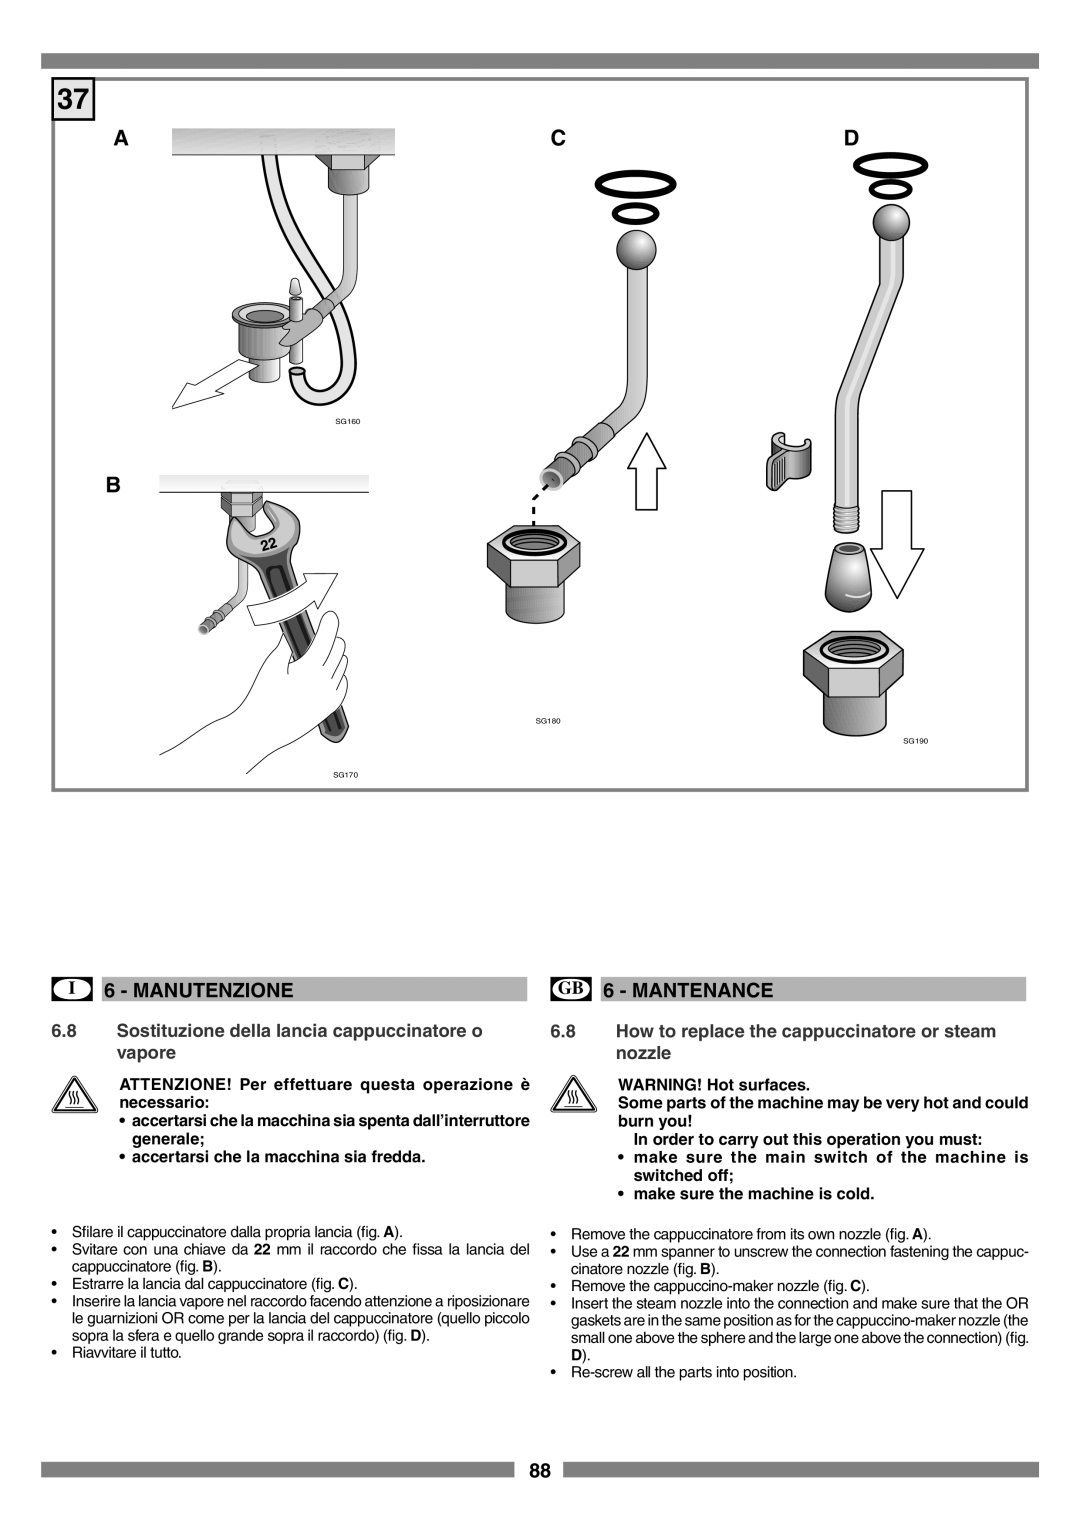 Smeg SCM1 manual A Cd, Sostituzione della lancia cappuccinatore o vapore, How to replace the cappuccinatore or steam nozzle 